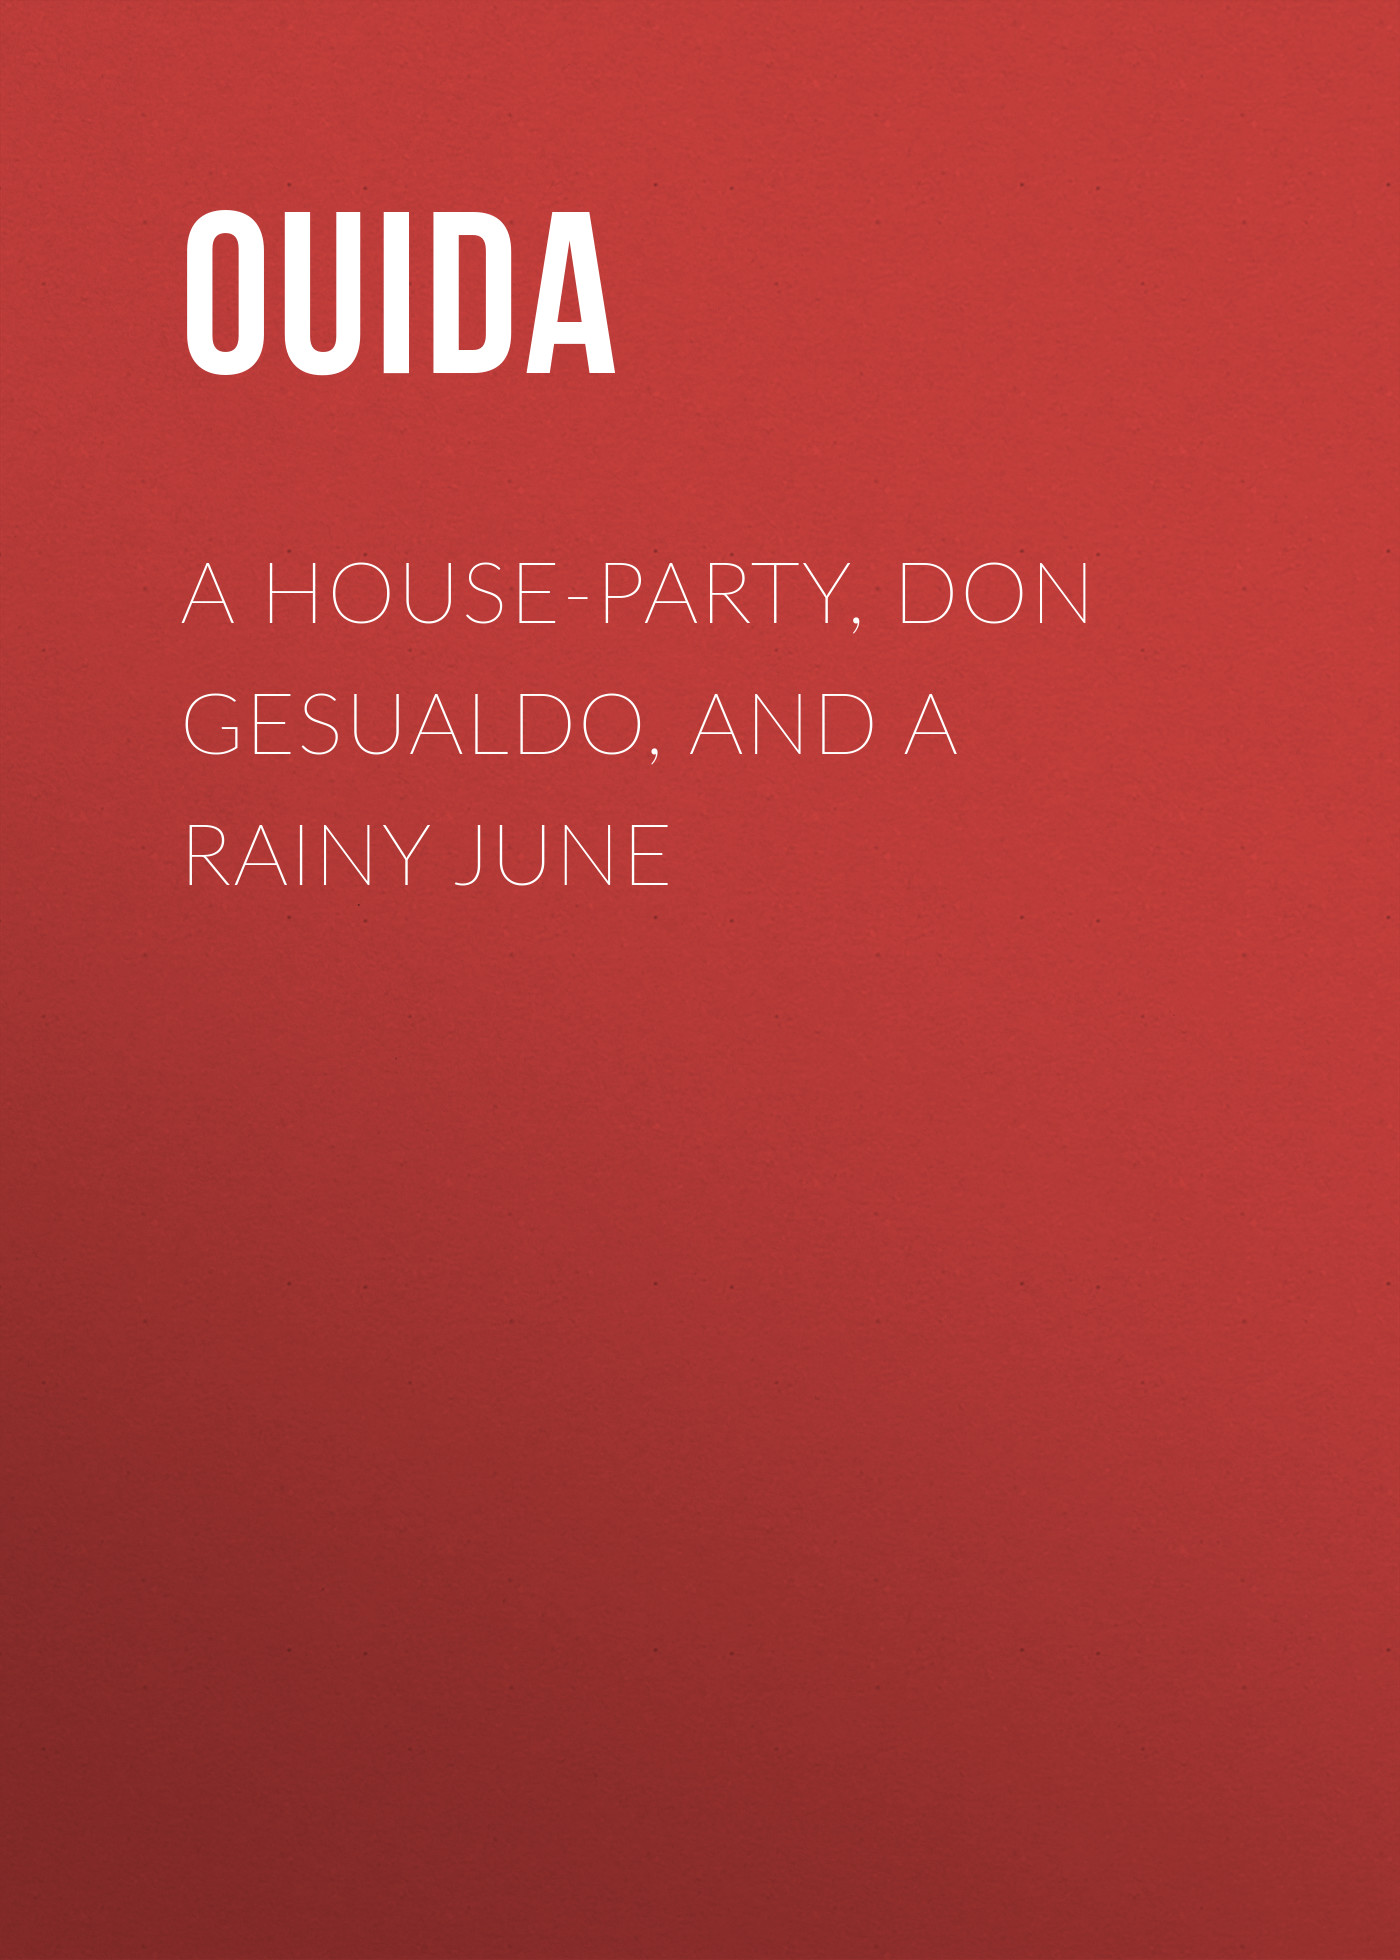 Книга A House-Party, Don Gesualdo, and A Rainy June из серии , созданная  Ouida, может относится к жанру Зарубежная классика, Литература 19 века, Зарубежная старинная литература. Стоимость электронной книги A House-Party, Don Gesualdo, and A Rainy June с идентификатором 36366494 составляет 0 руб.